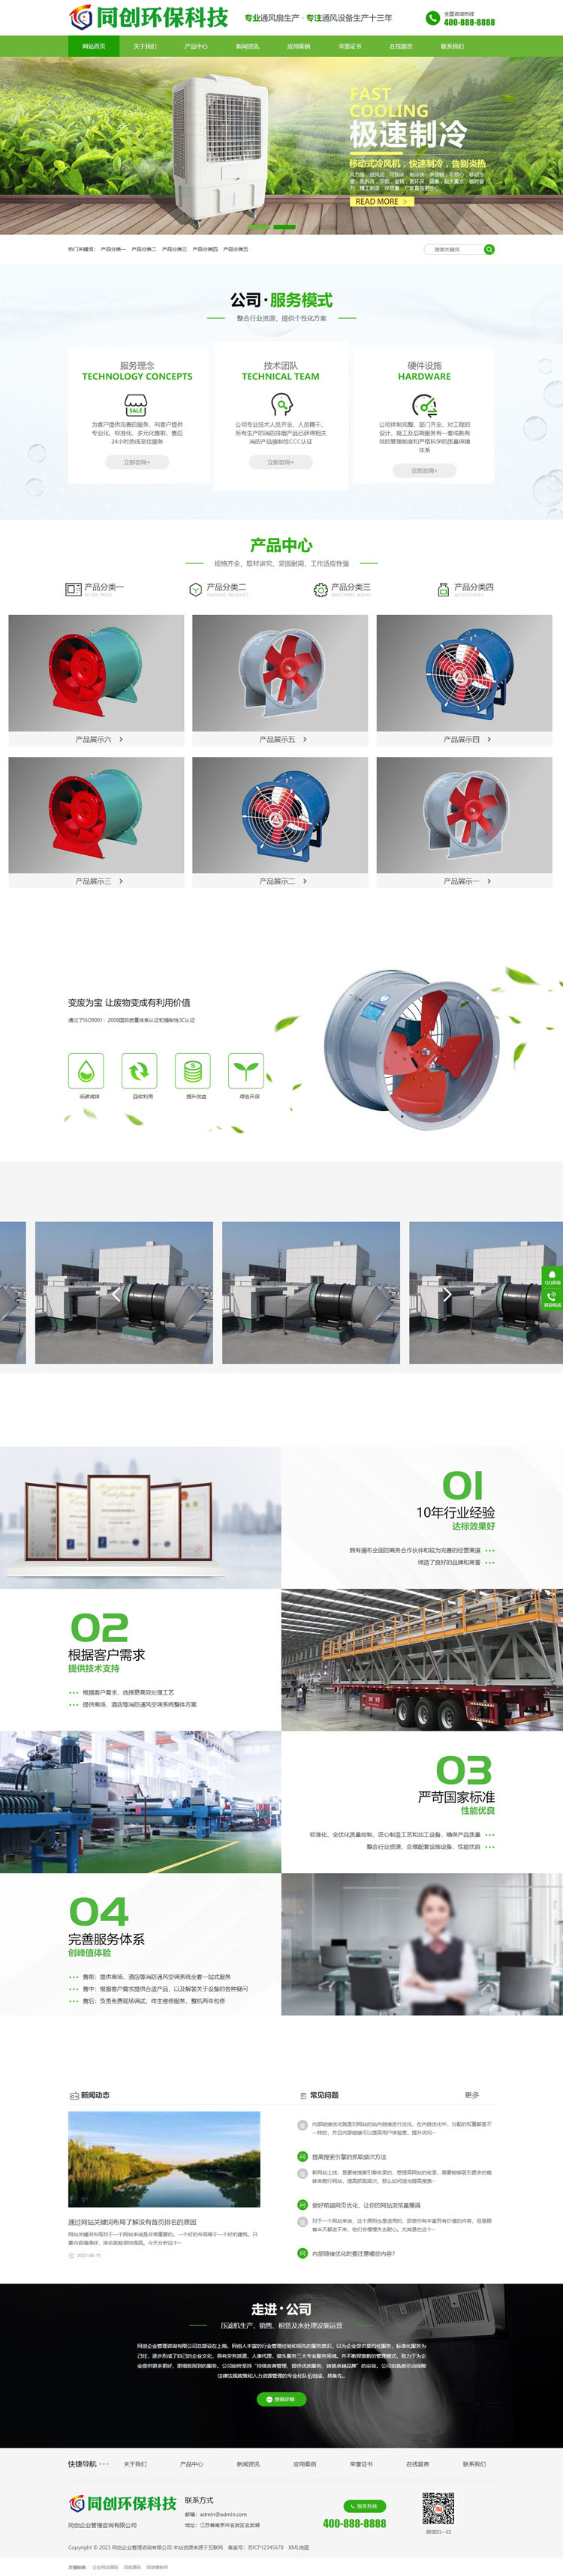 响应式HTML5大气绿色环保机电网站模板-BY052-2